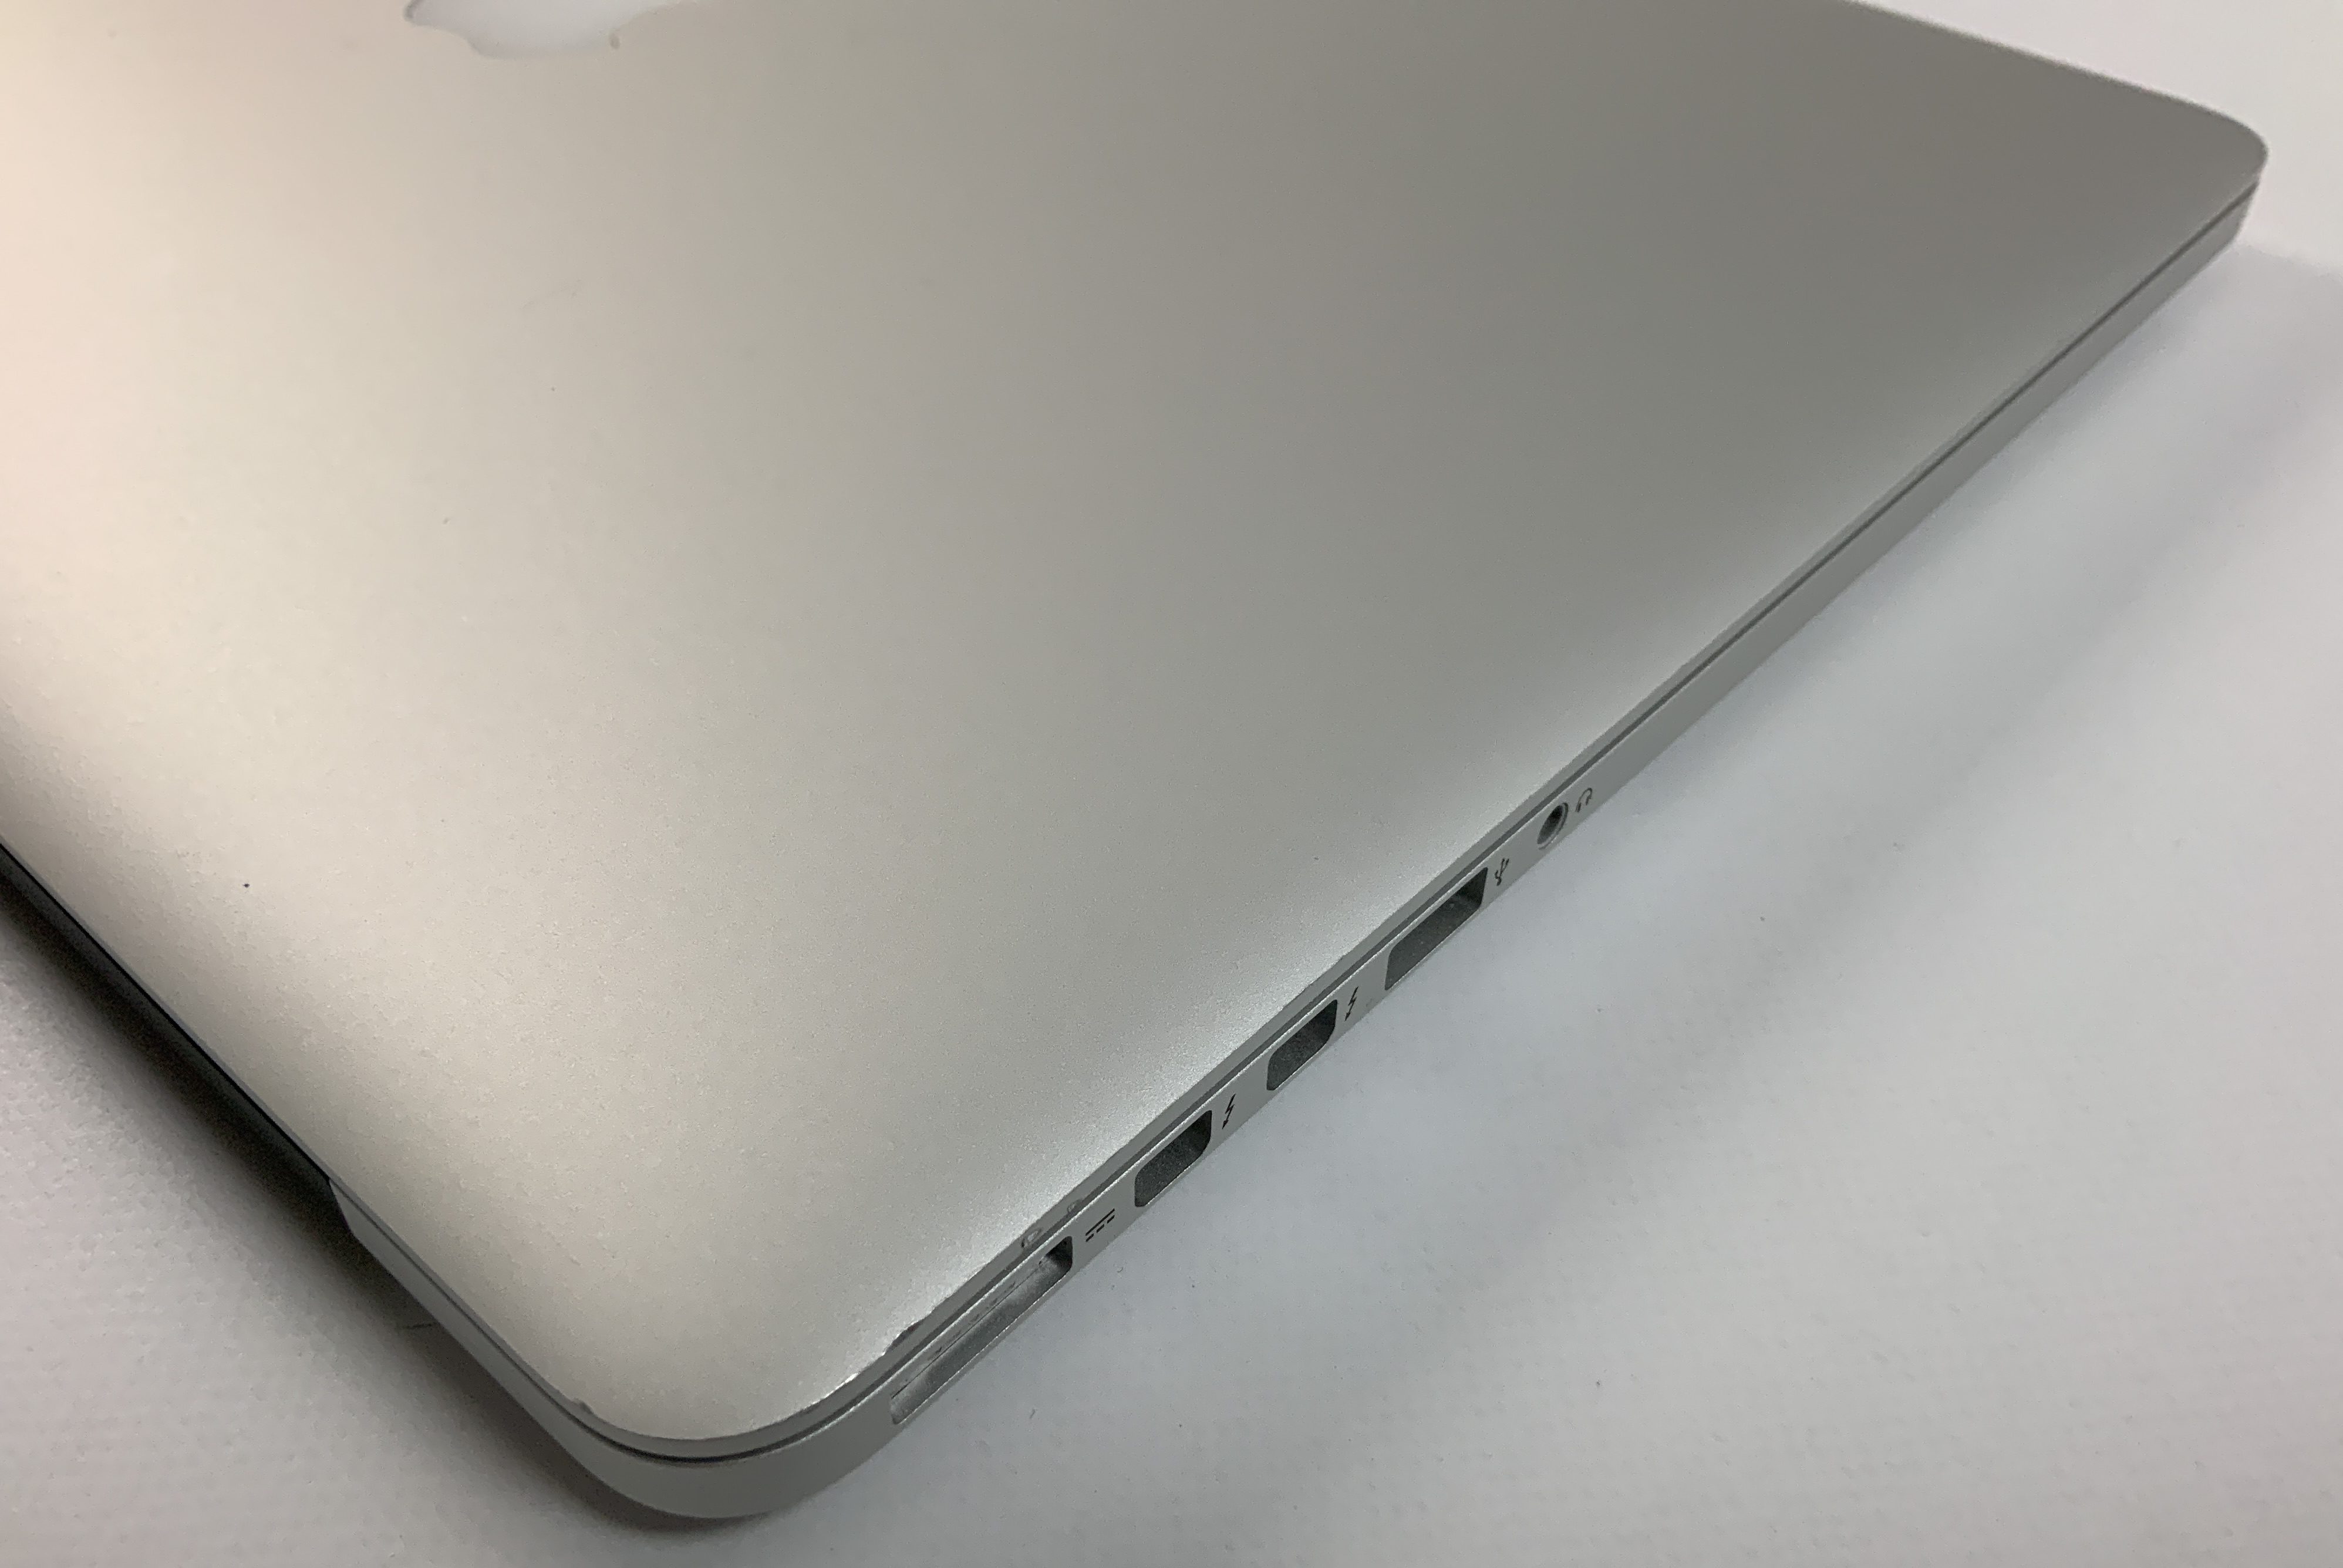 MacBook Pro Retina 15" Mid 2015 (Intel Quad-Core i7 2.2 GHz 16 GB RAM 256 GB SSD), Intel Quad-Core i7 2.2 GHz, 16 GB RAM, 256 GB SSD, bild 3